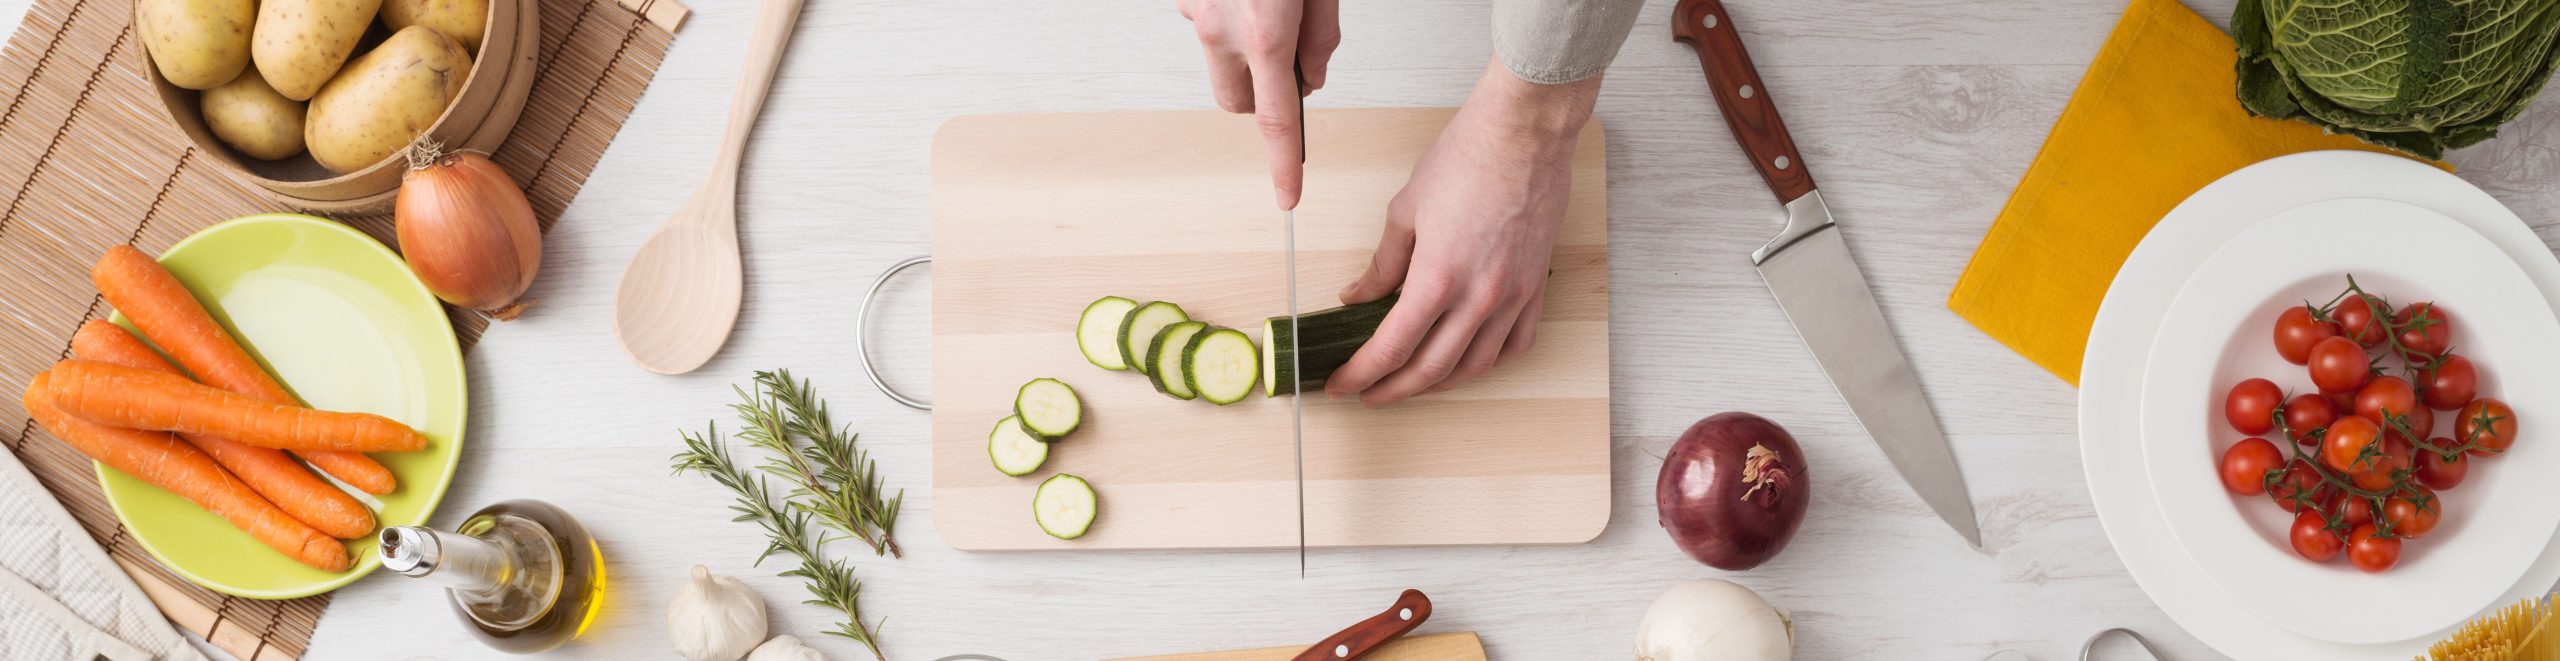 A woman cutting a cucumber